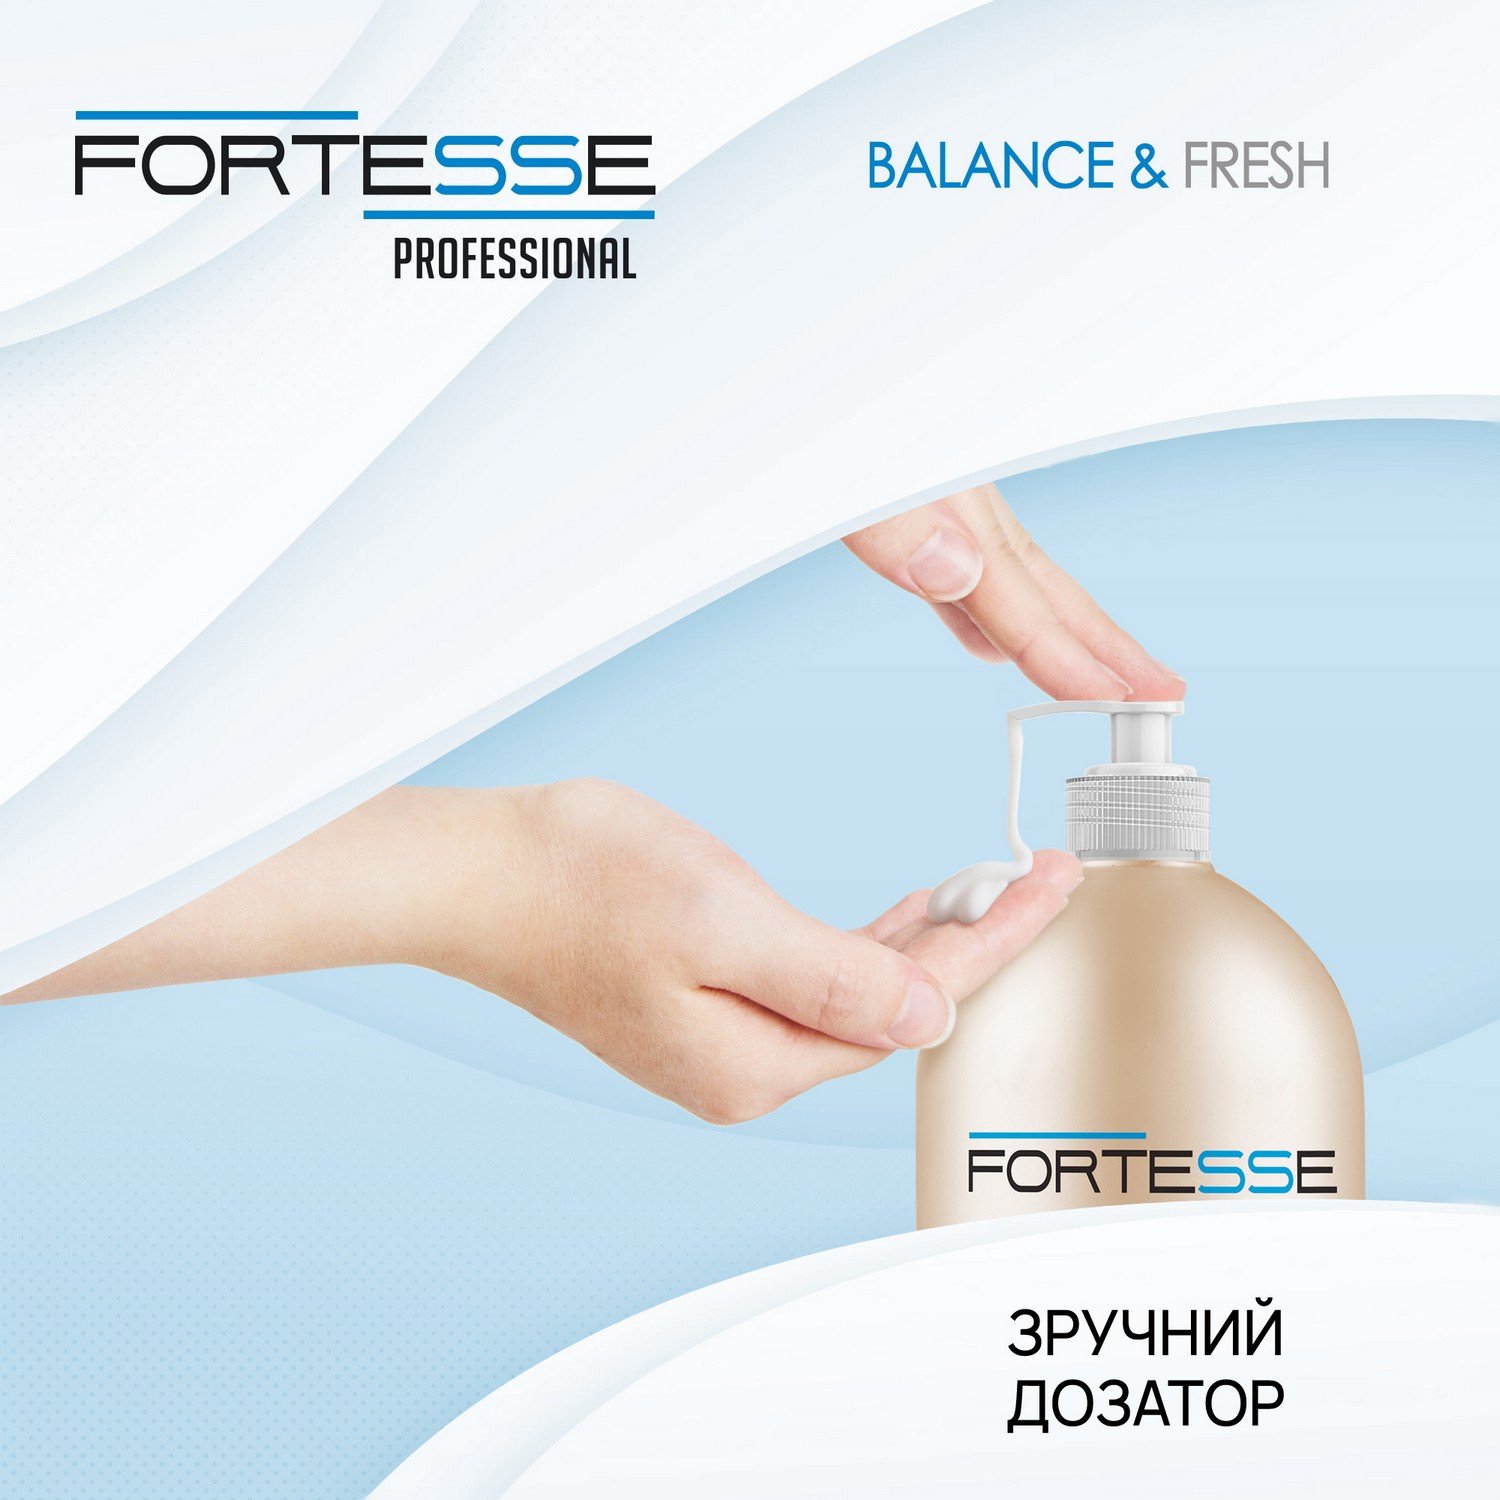 Шампунь Fortesse Professional Balance & Fresh, для всех типов волос, с дозатором, 1000 мл - фото 4